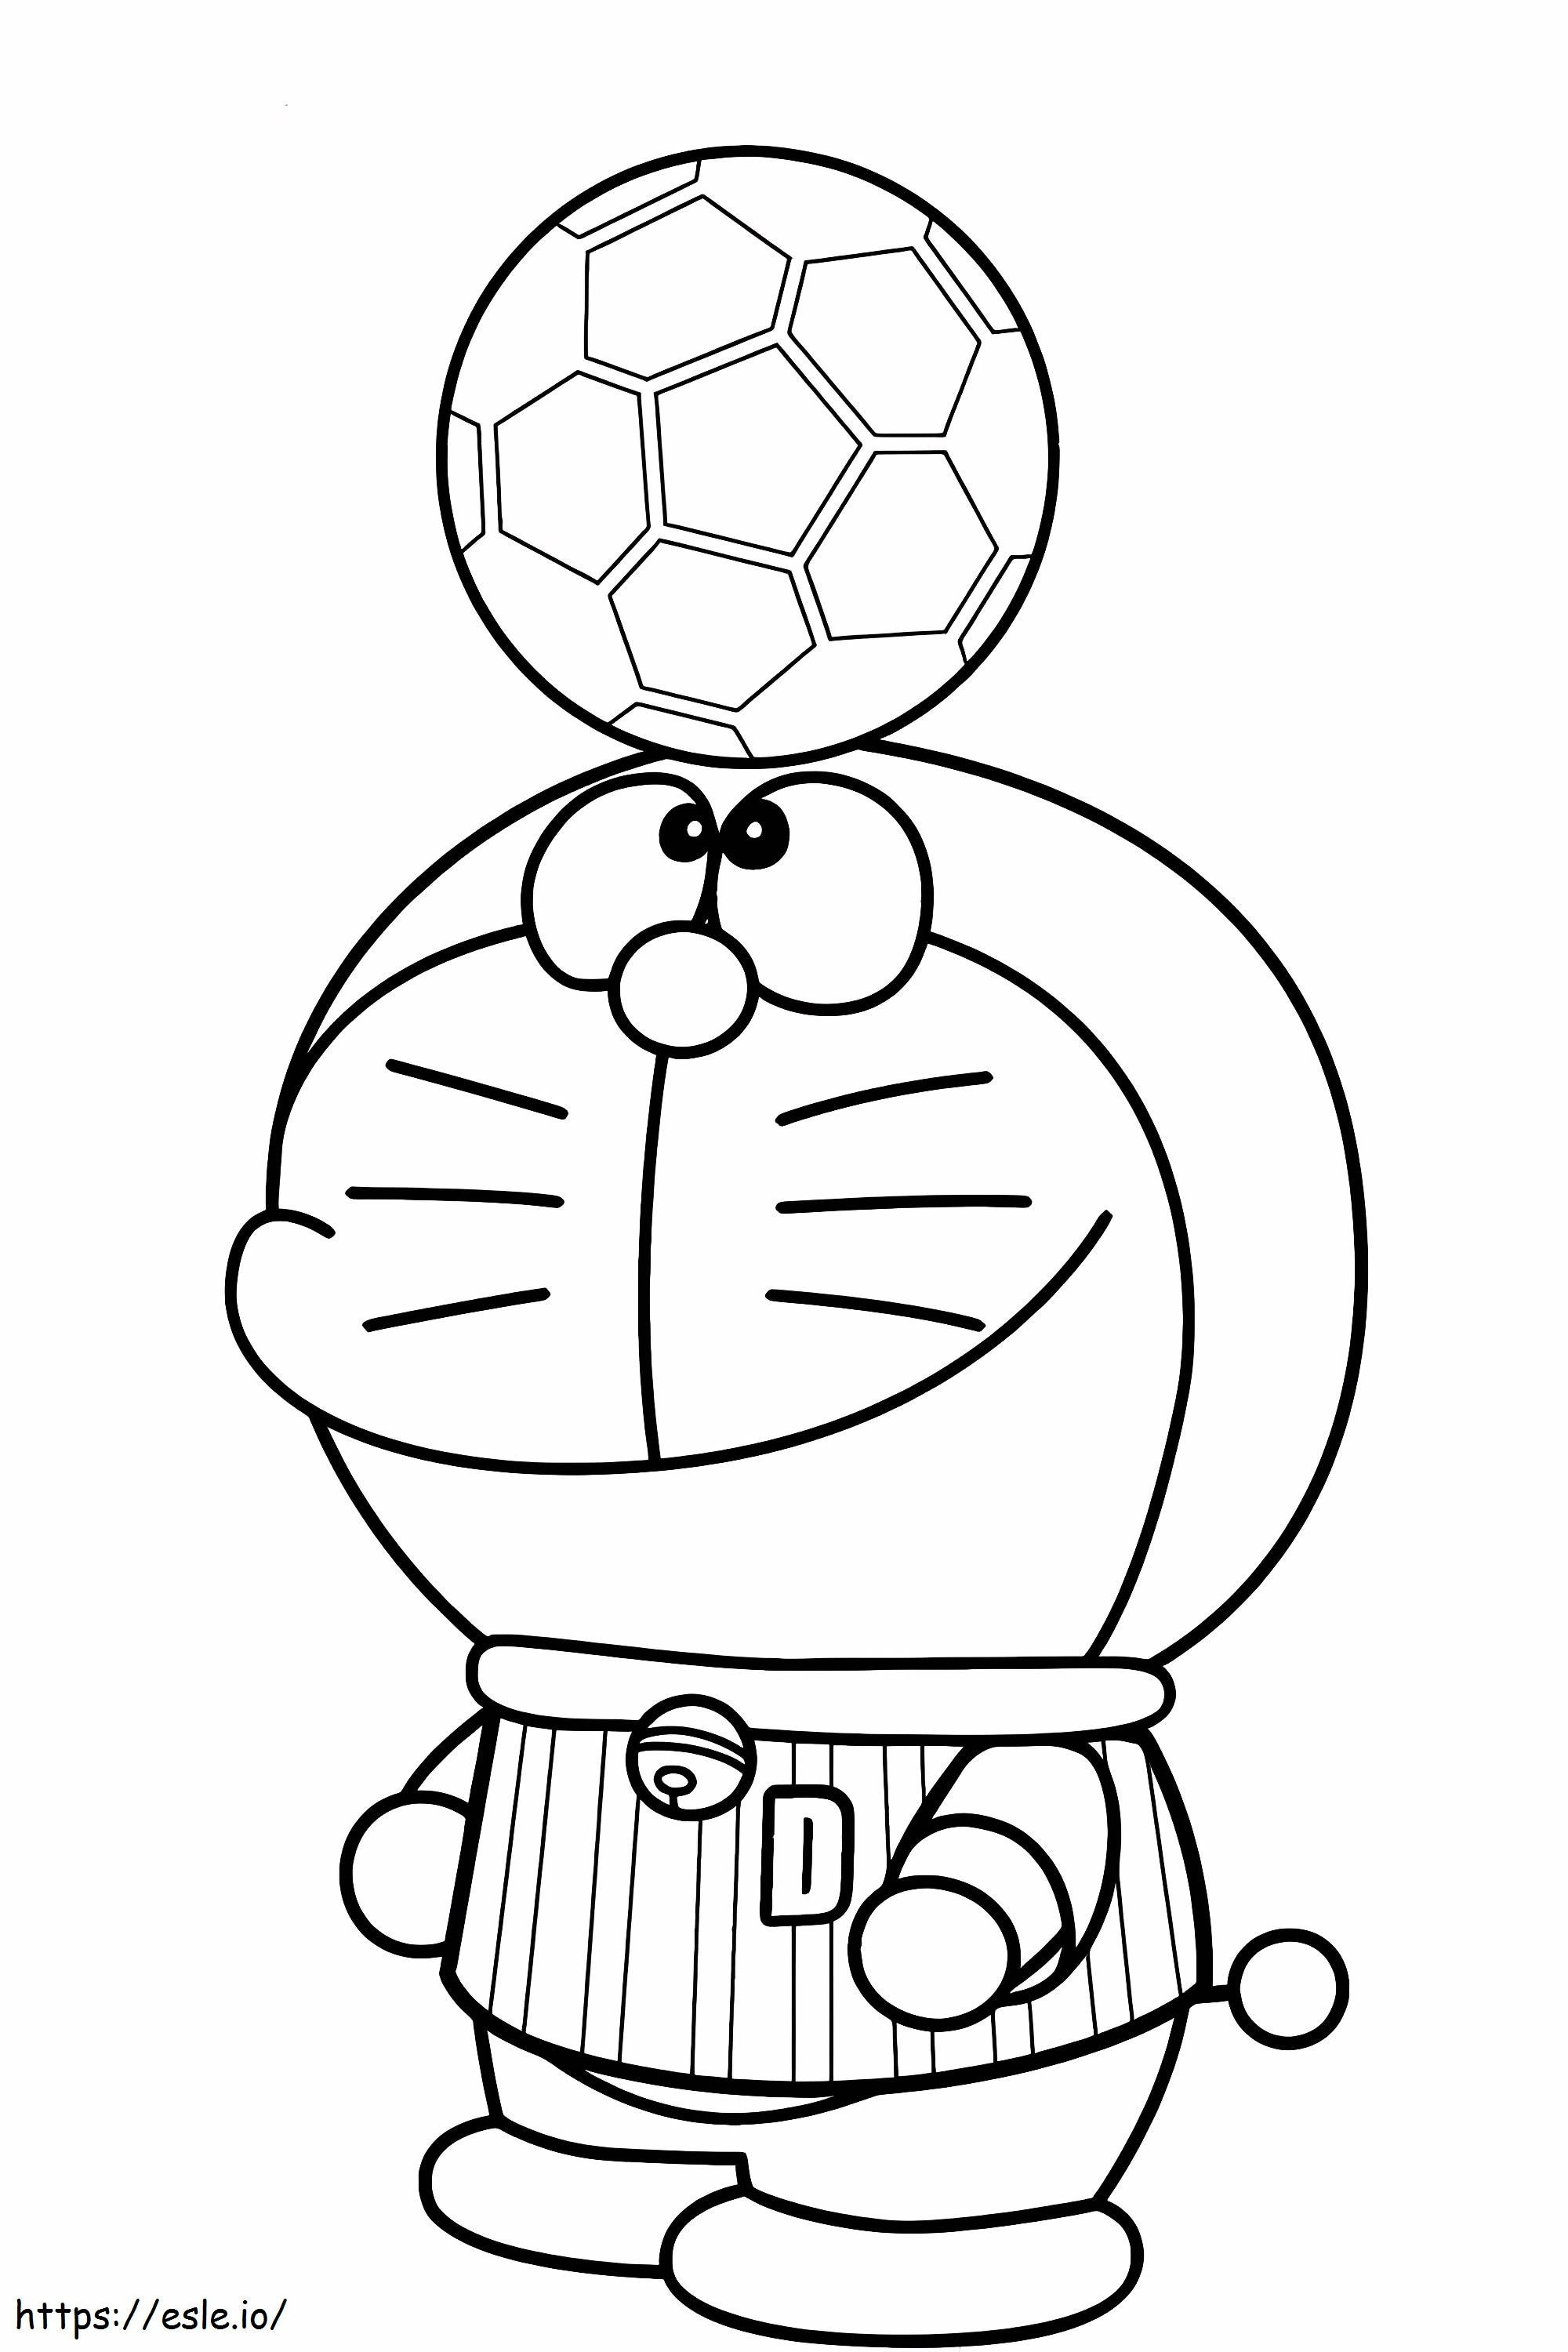 1540782584_Ik hou van voetbal Mooie Doraemon Kleurplaten Lijnmagiër Doraemon van I Love Soccer kleurplaat kleurplaat